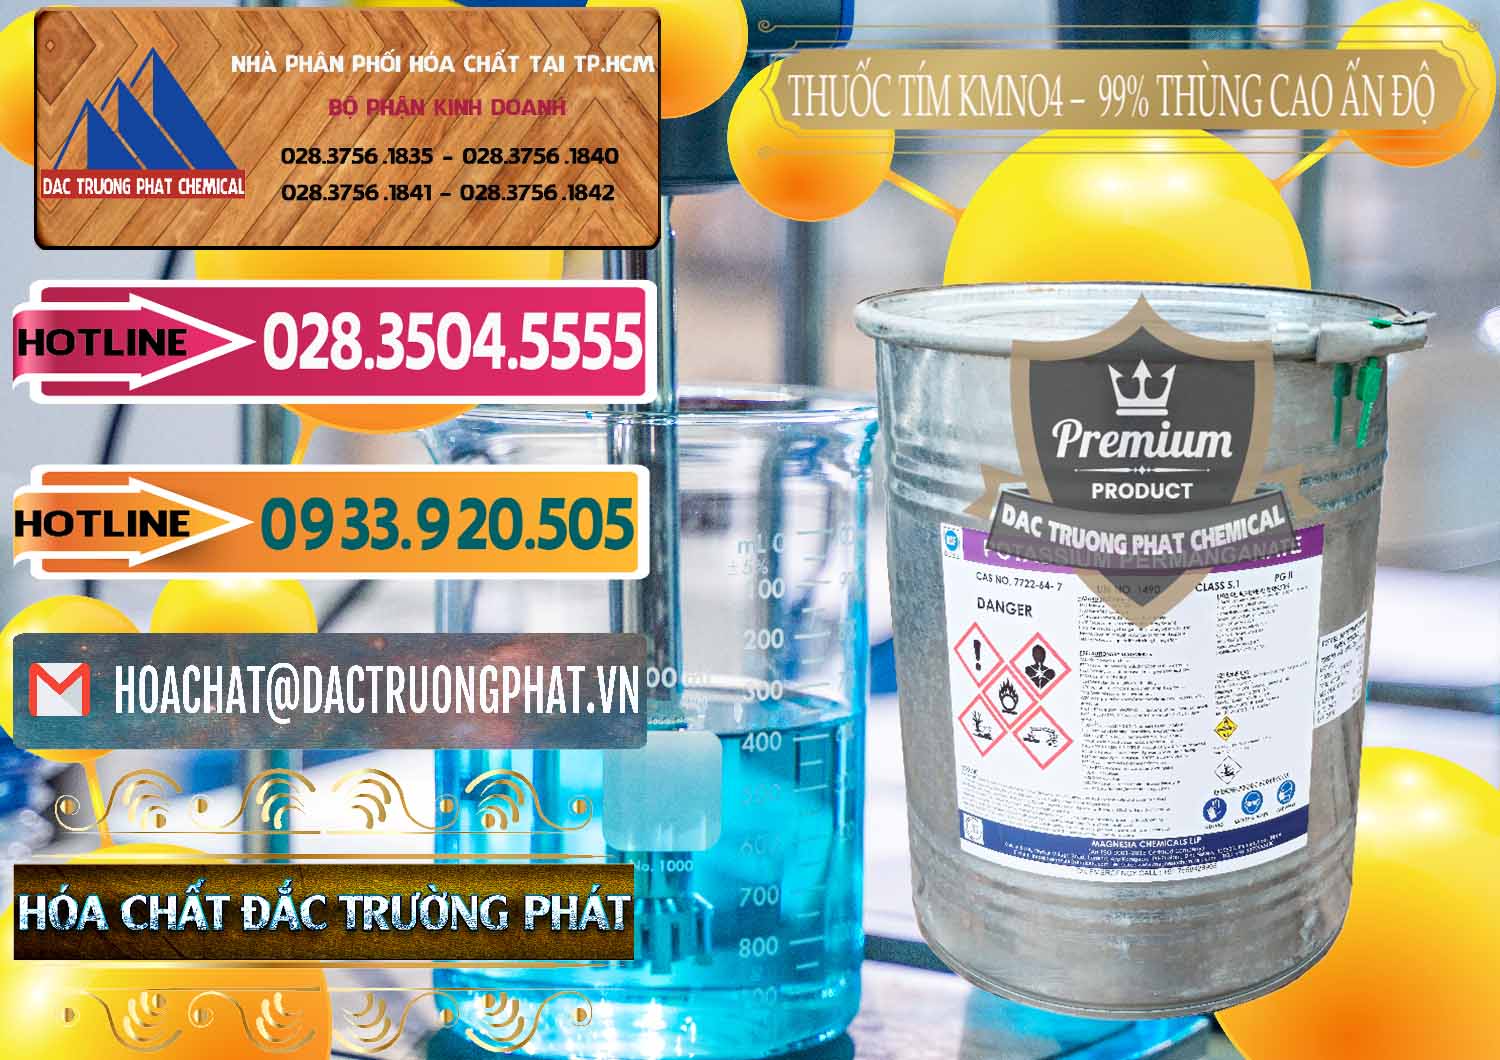 Cty phân phối & bán Thuốc Tím - KMNO4 Thùng Cao 99% Magnesia Chemicals Ấn Độ India - 0164 - Cty bán và cung cấp hóa chất tại TP.HCM - dactruongphat.vn